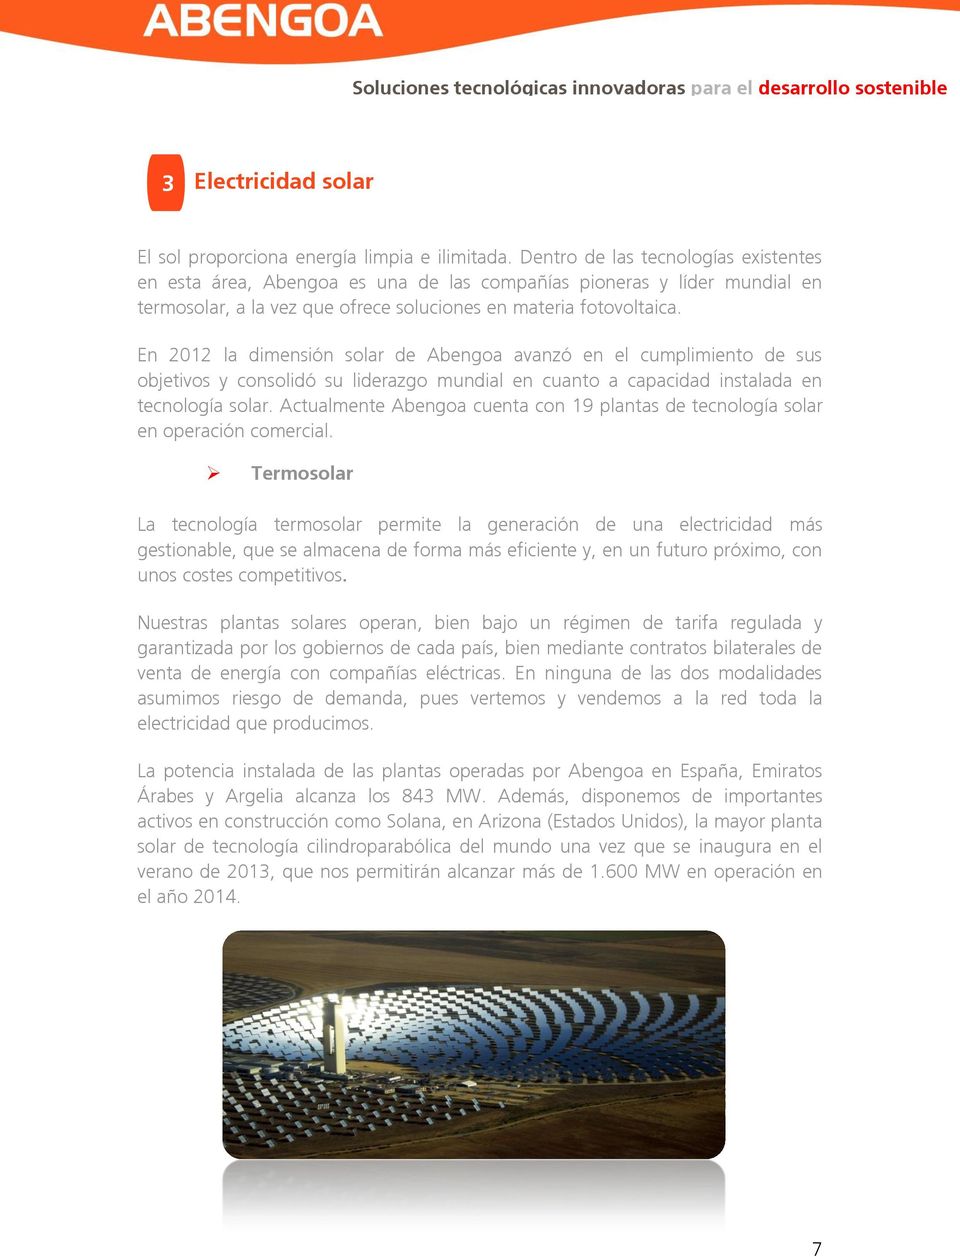 En 2012 la dimensión solar de Abengoa avanzó en el cumplimiento de sus objetivos y consolidó su liderazgo mundial en cuanto a capacidad instalada en tecnología solar.